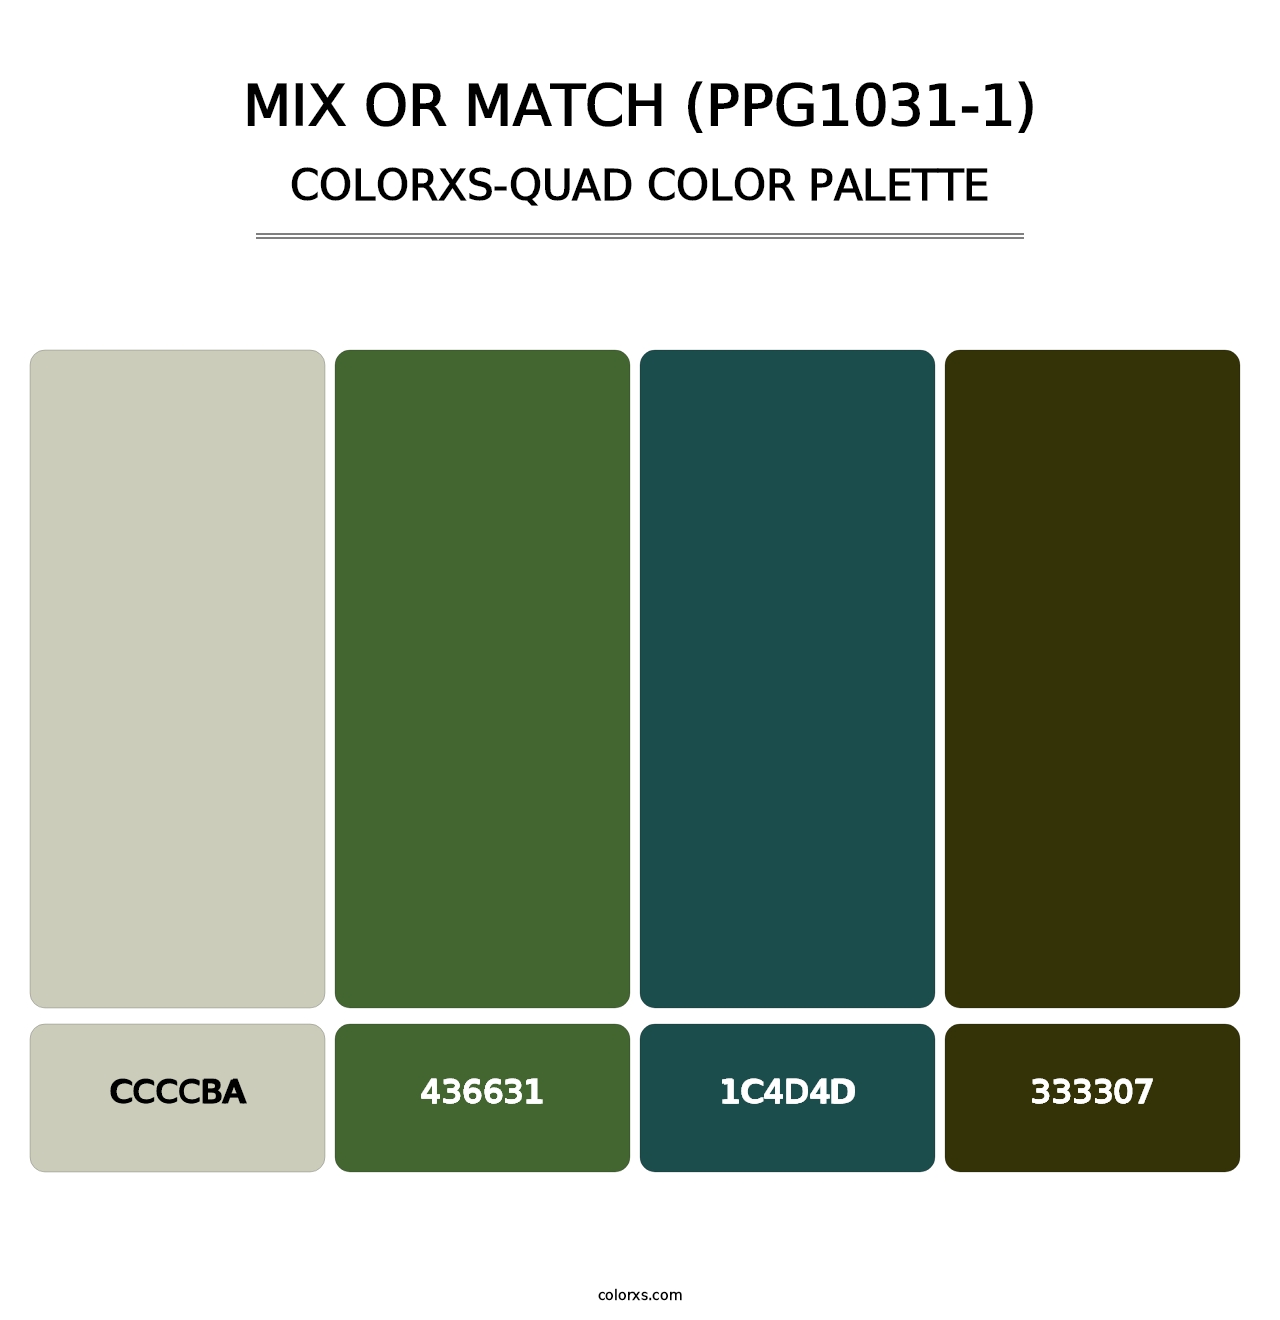 Mix Or Match (PPG1031-1) - Colorxs Quad Palette